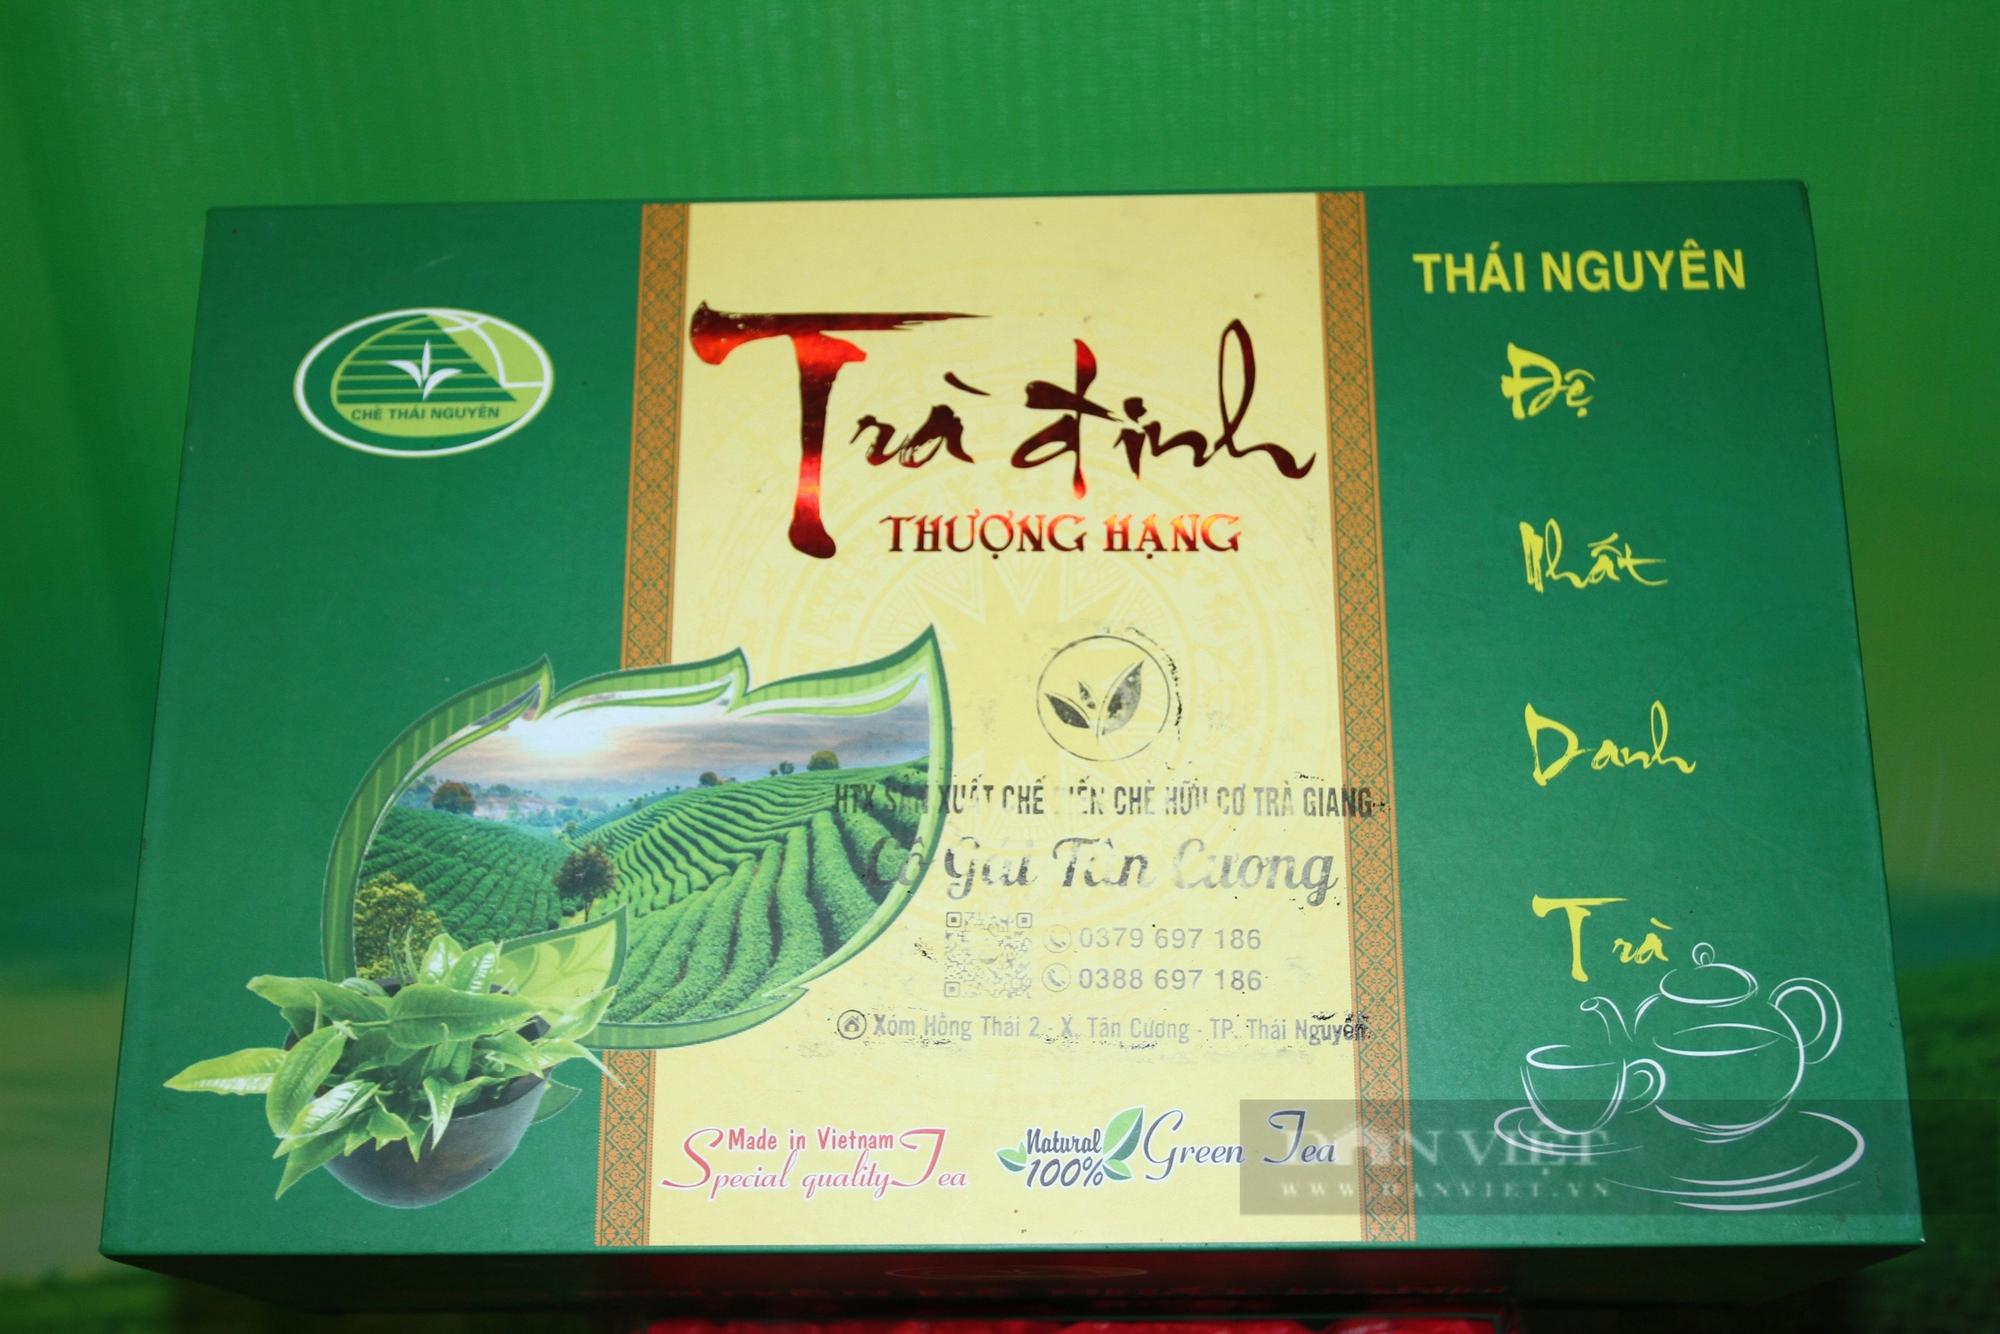 Trồng chè tạo ra loại trà màu sắc bắt mắt, bà Giám đốc ở Thái Nguyên kế nghiệp thành công- Ảnh 8.